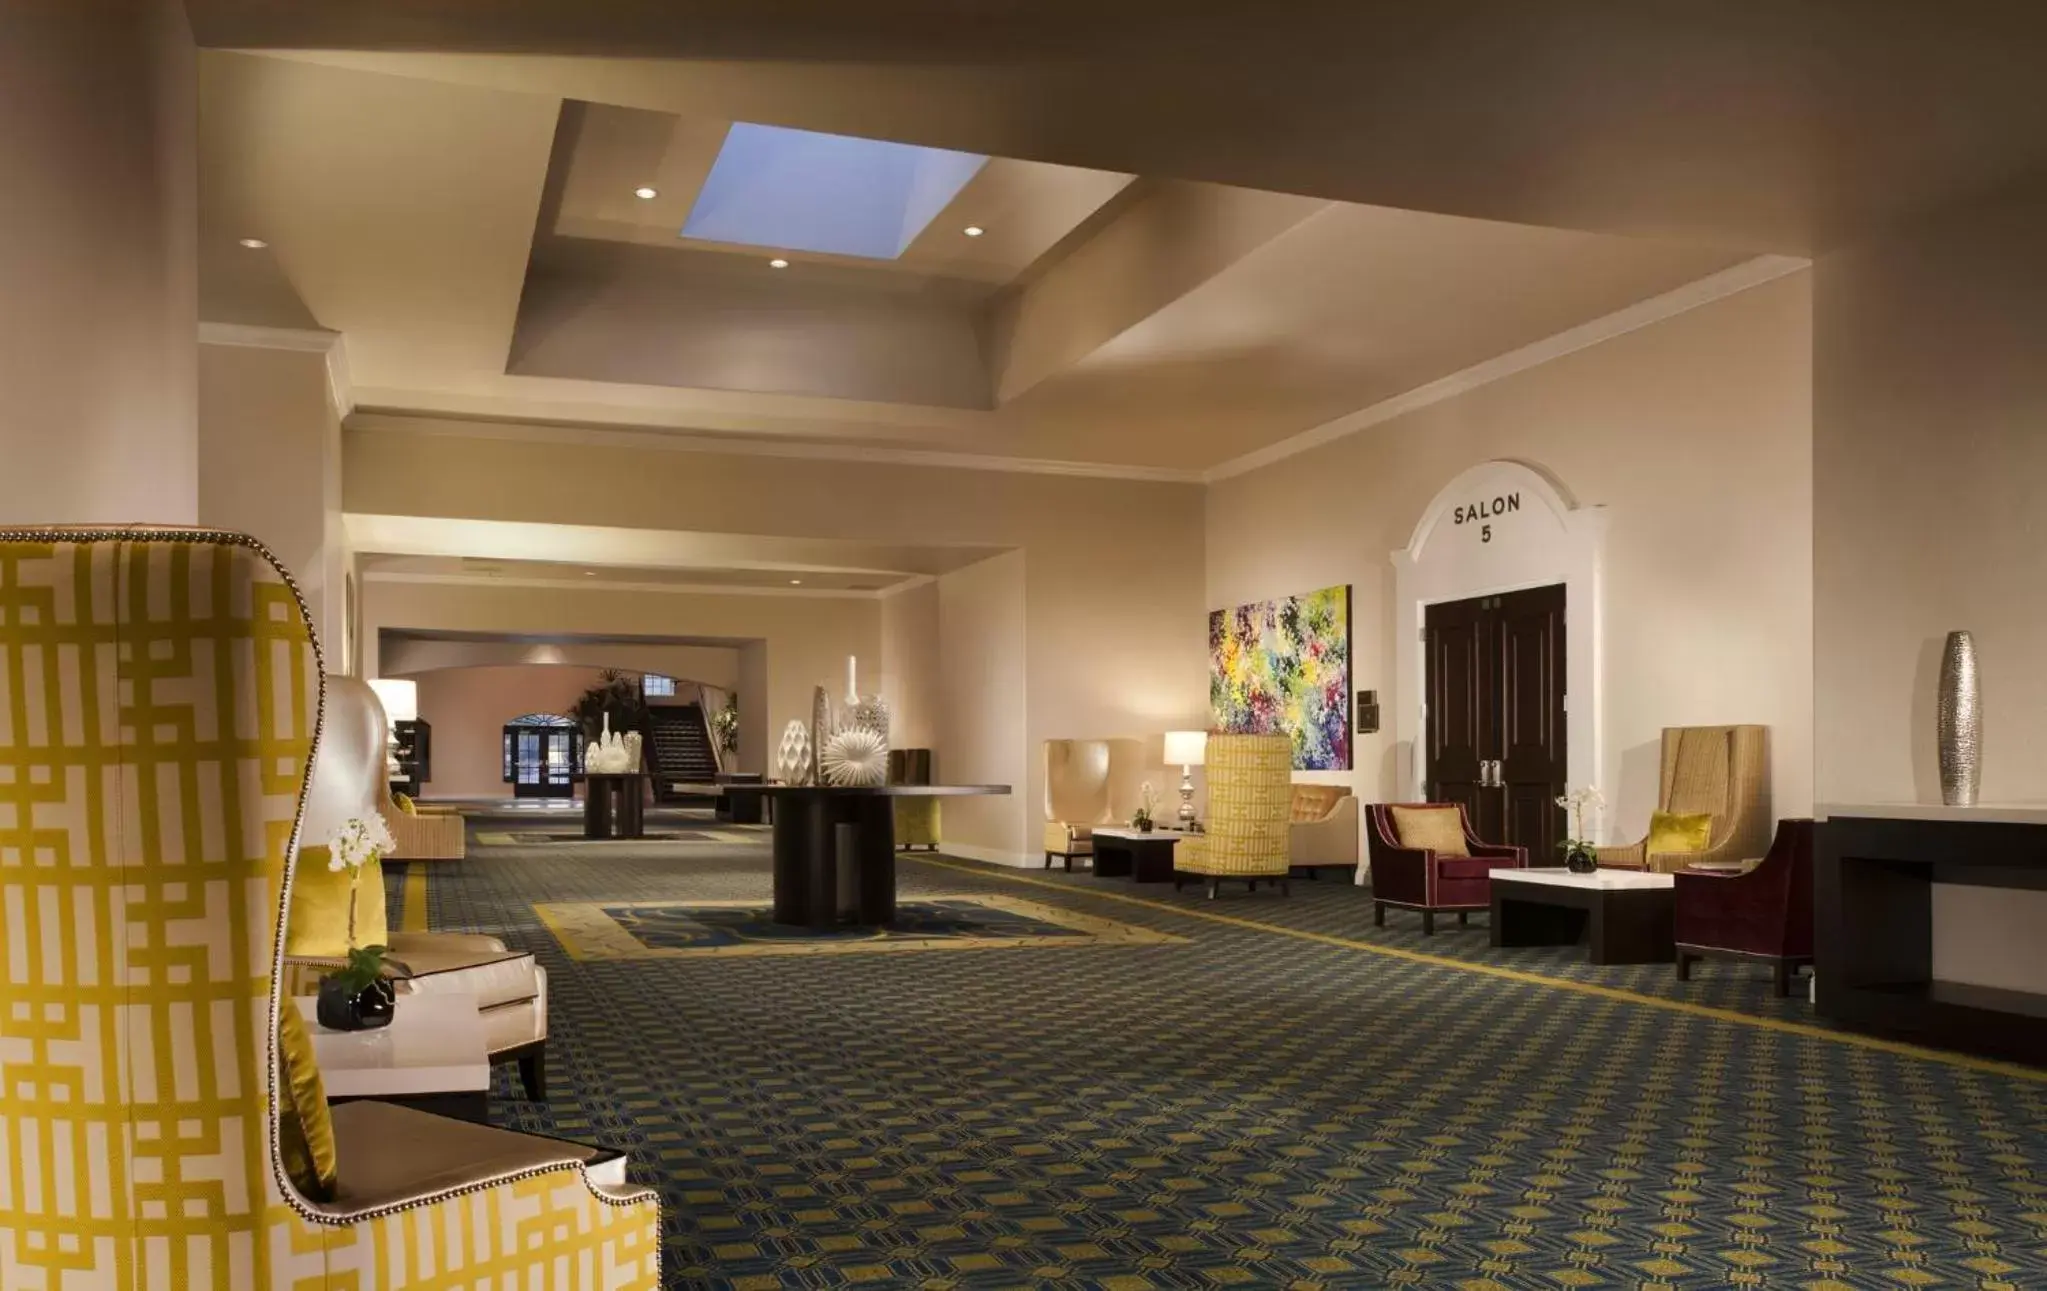 Banquet/Function facilities, Lobby/Reception in Omni Rancho Las Palmas Resort & Spa